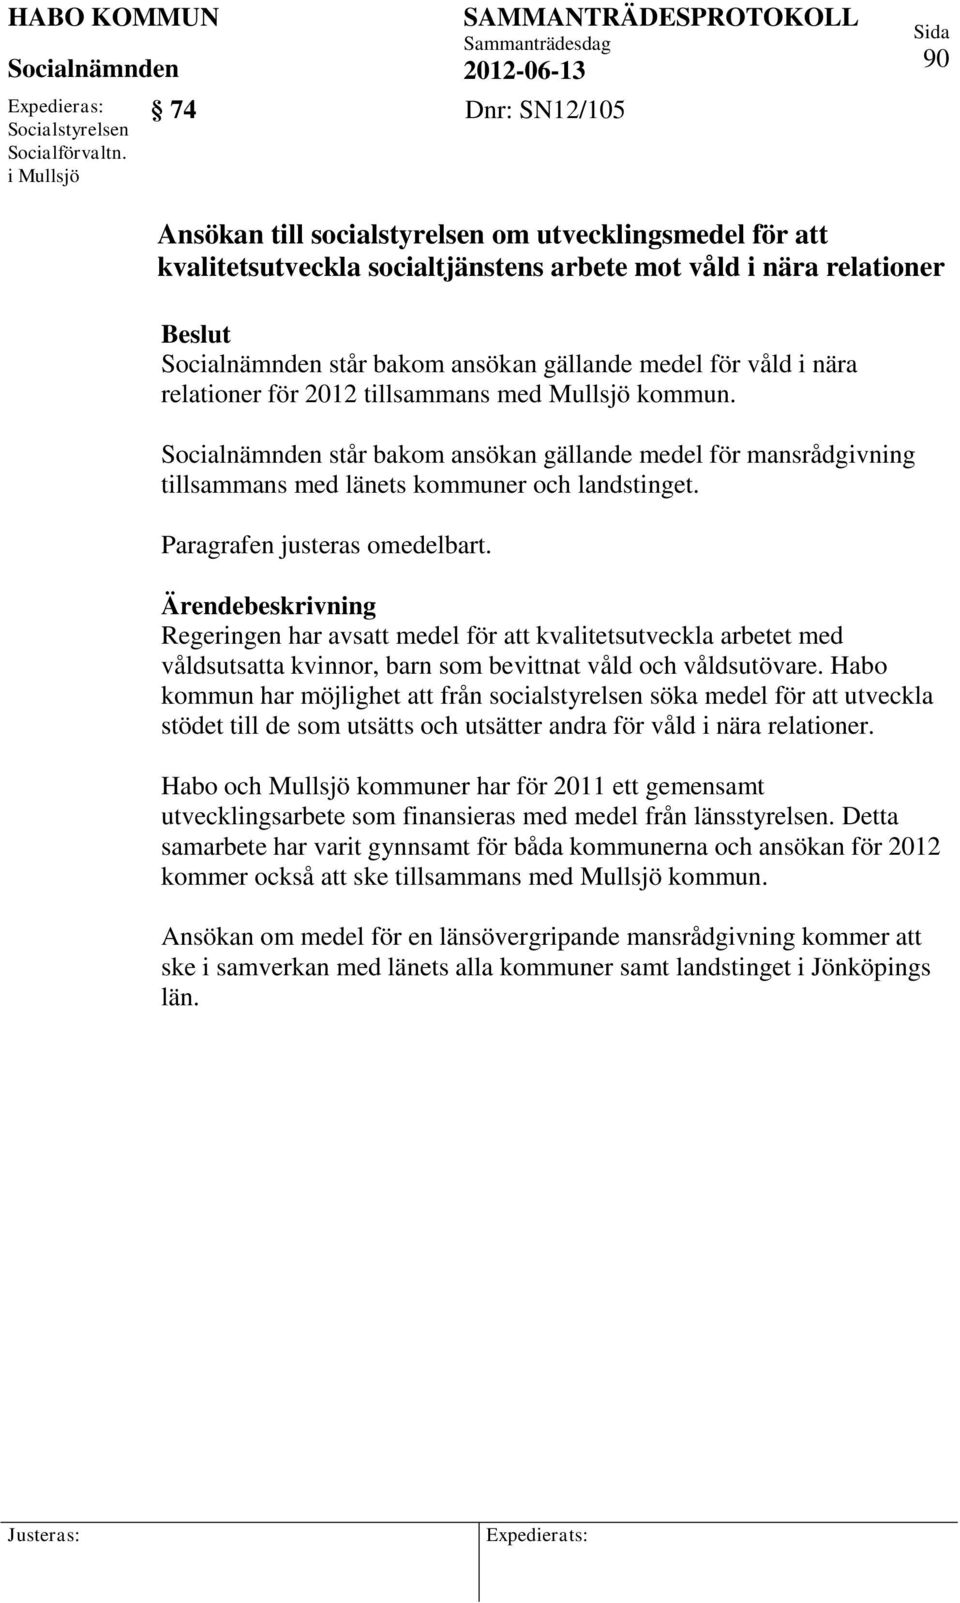 nära relationer för 2012 tillsammans med Mullsjö kommun. står bakom ansökan gällande medel för mansrådgivning tillsammans med länets kommuner och landstinget. Paragrafen justeras omedelbart.